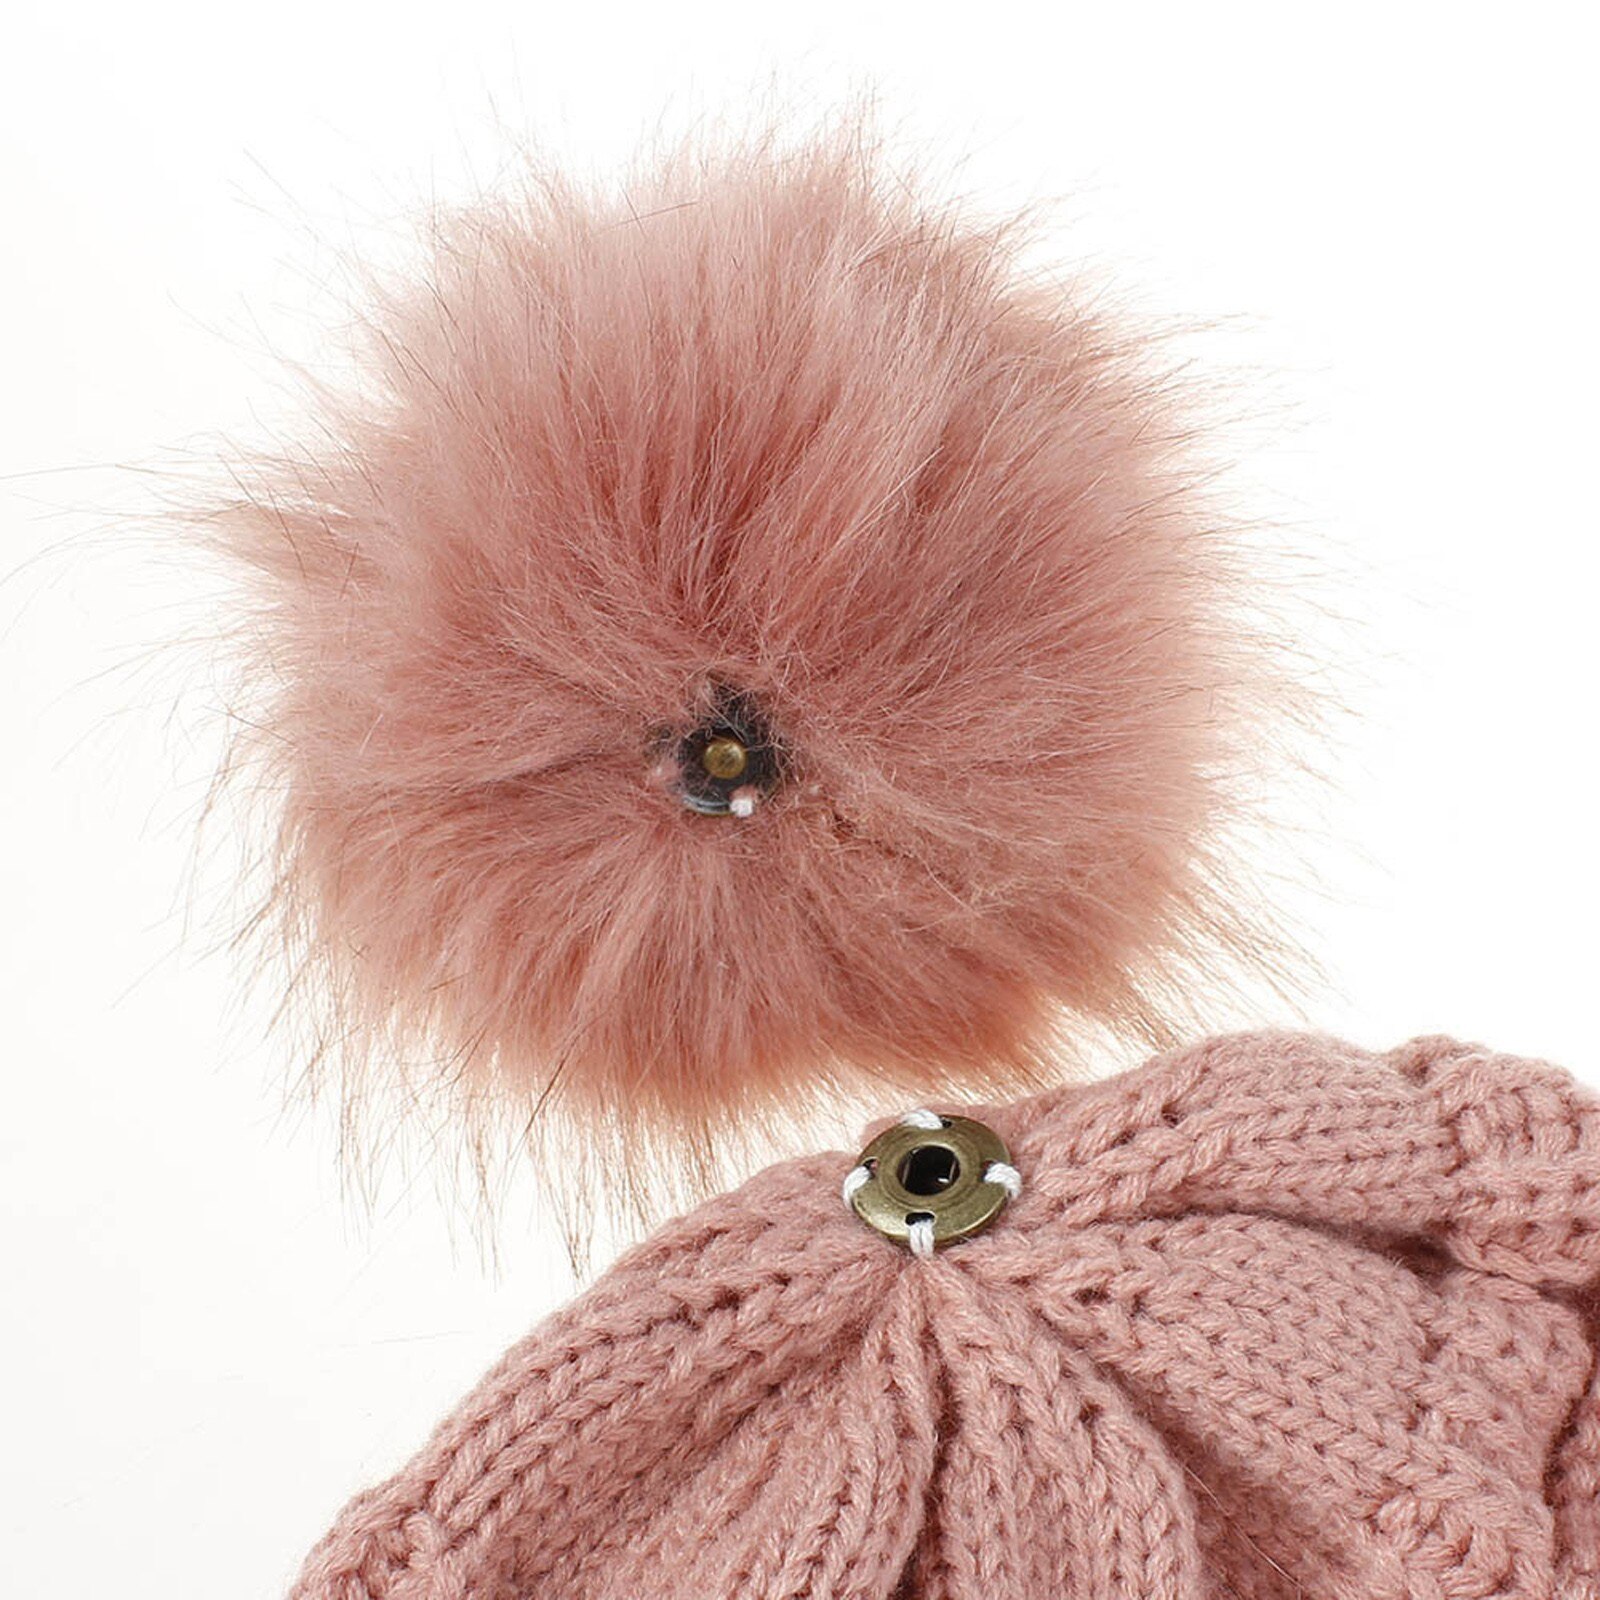 E la moda donna nuova E di alta qualità mantiene caldi cappelli invernali cappello a orlo in lana lavorato a maglia morbido delicato sulla pelle, traspirante